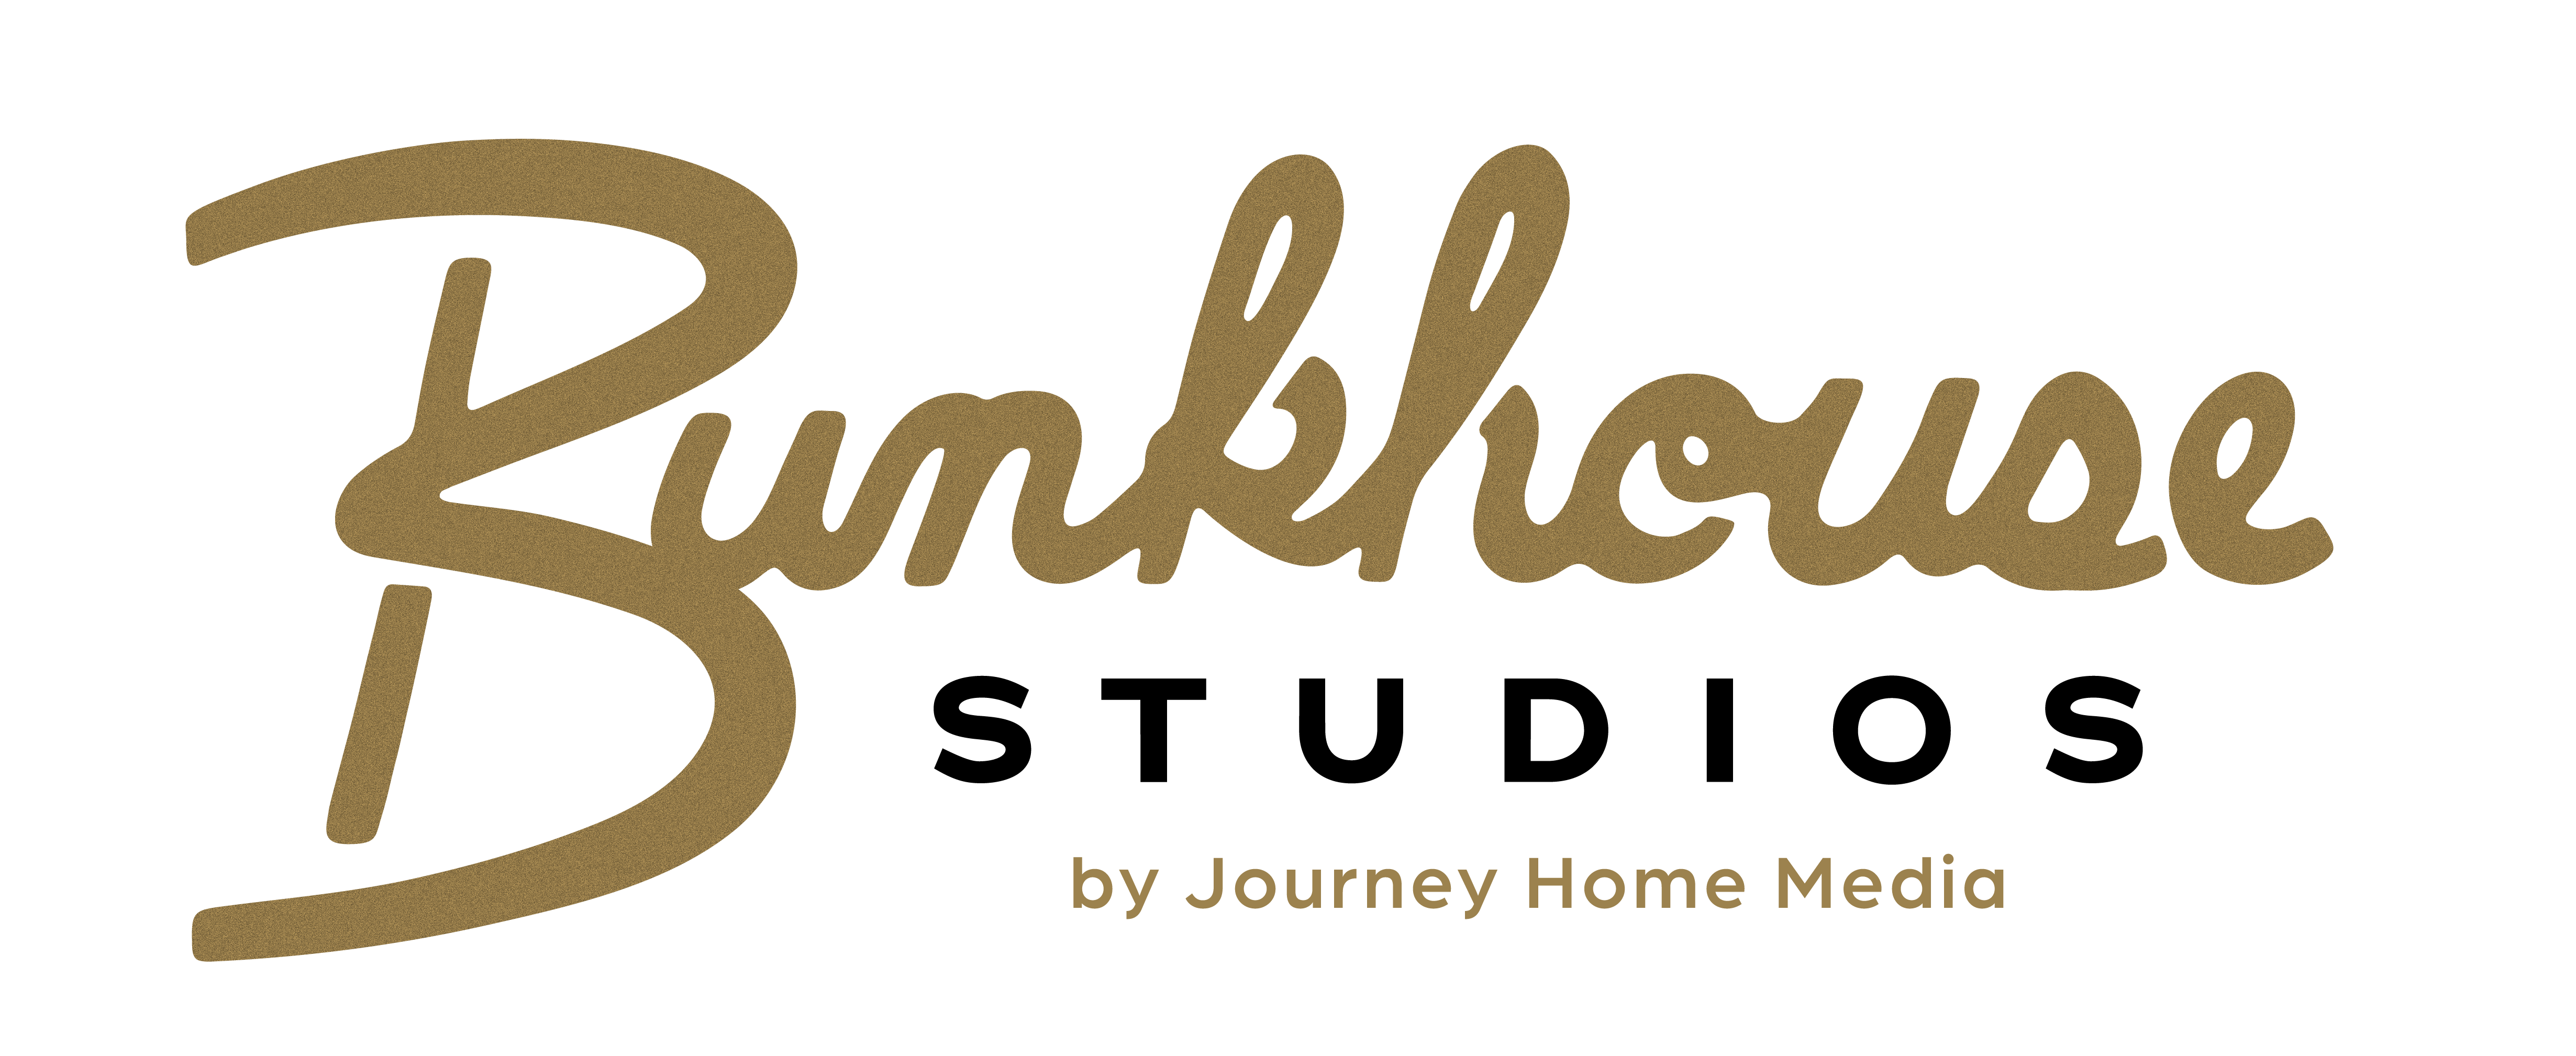 Bunkhouse Studios